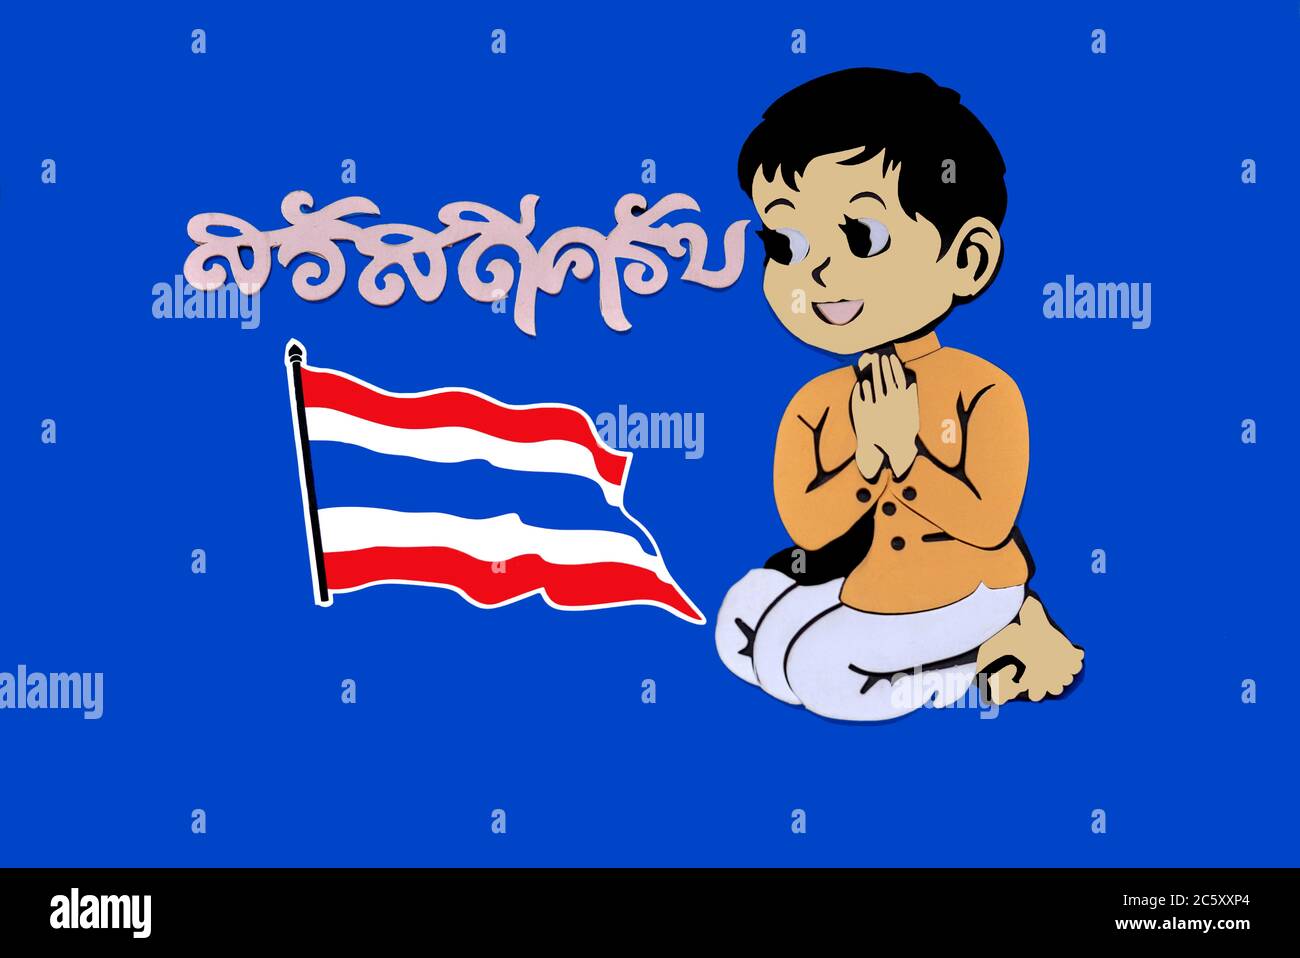 Illustration de l'accueil de Thaïlande avec Wai Gesture. Libellé thaï écrit traduit par Sawasdee Khrap, signifiant Bonjour. Banque D'Images